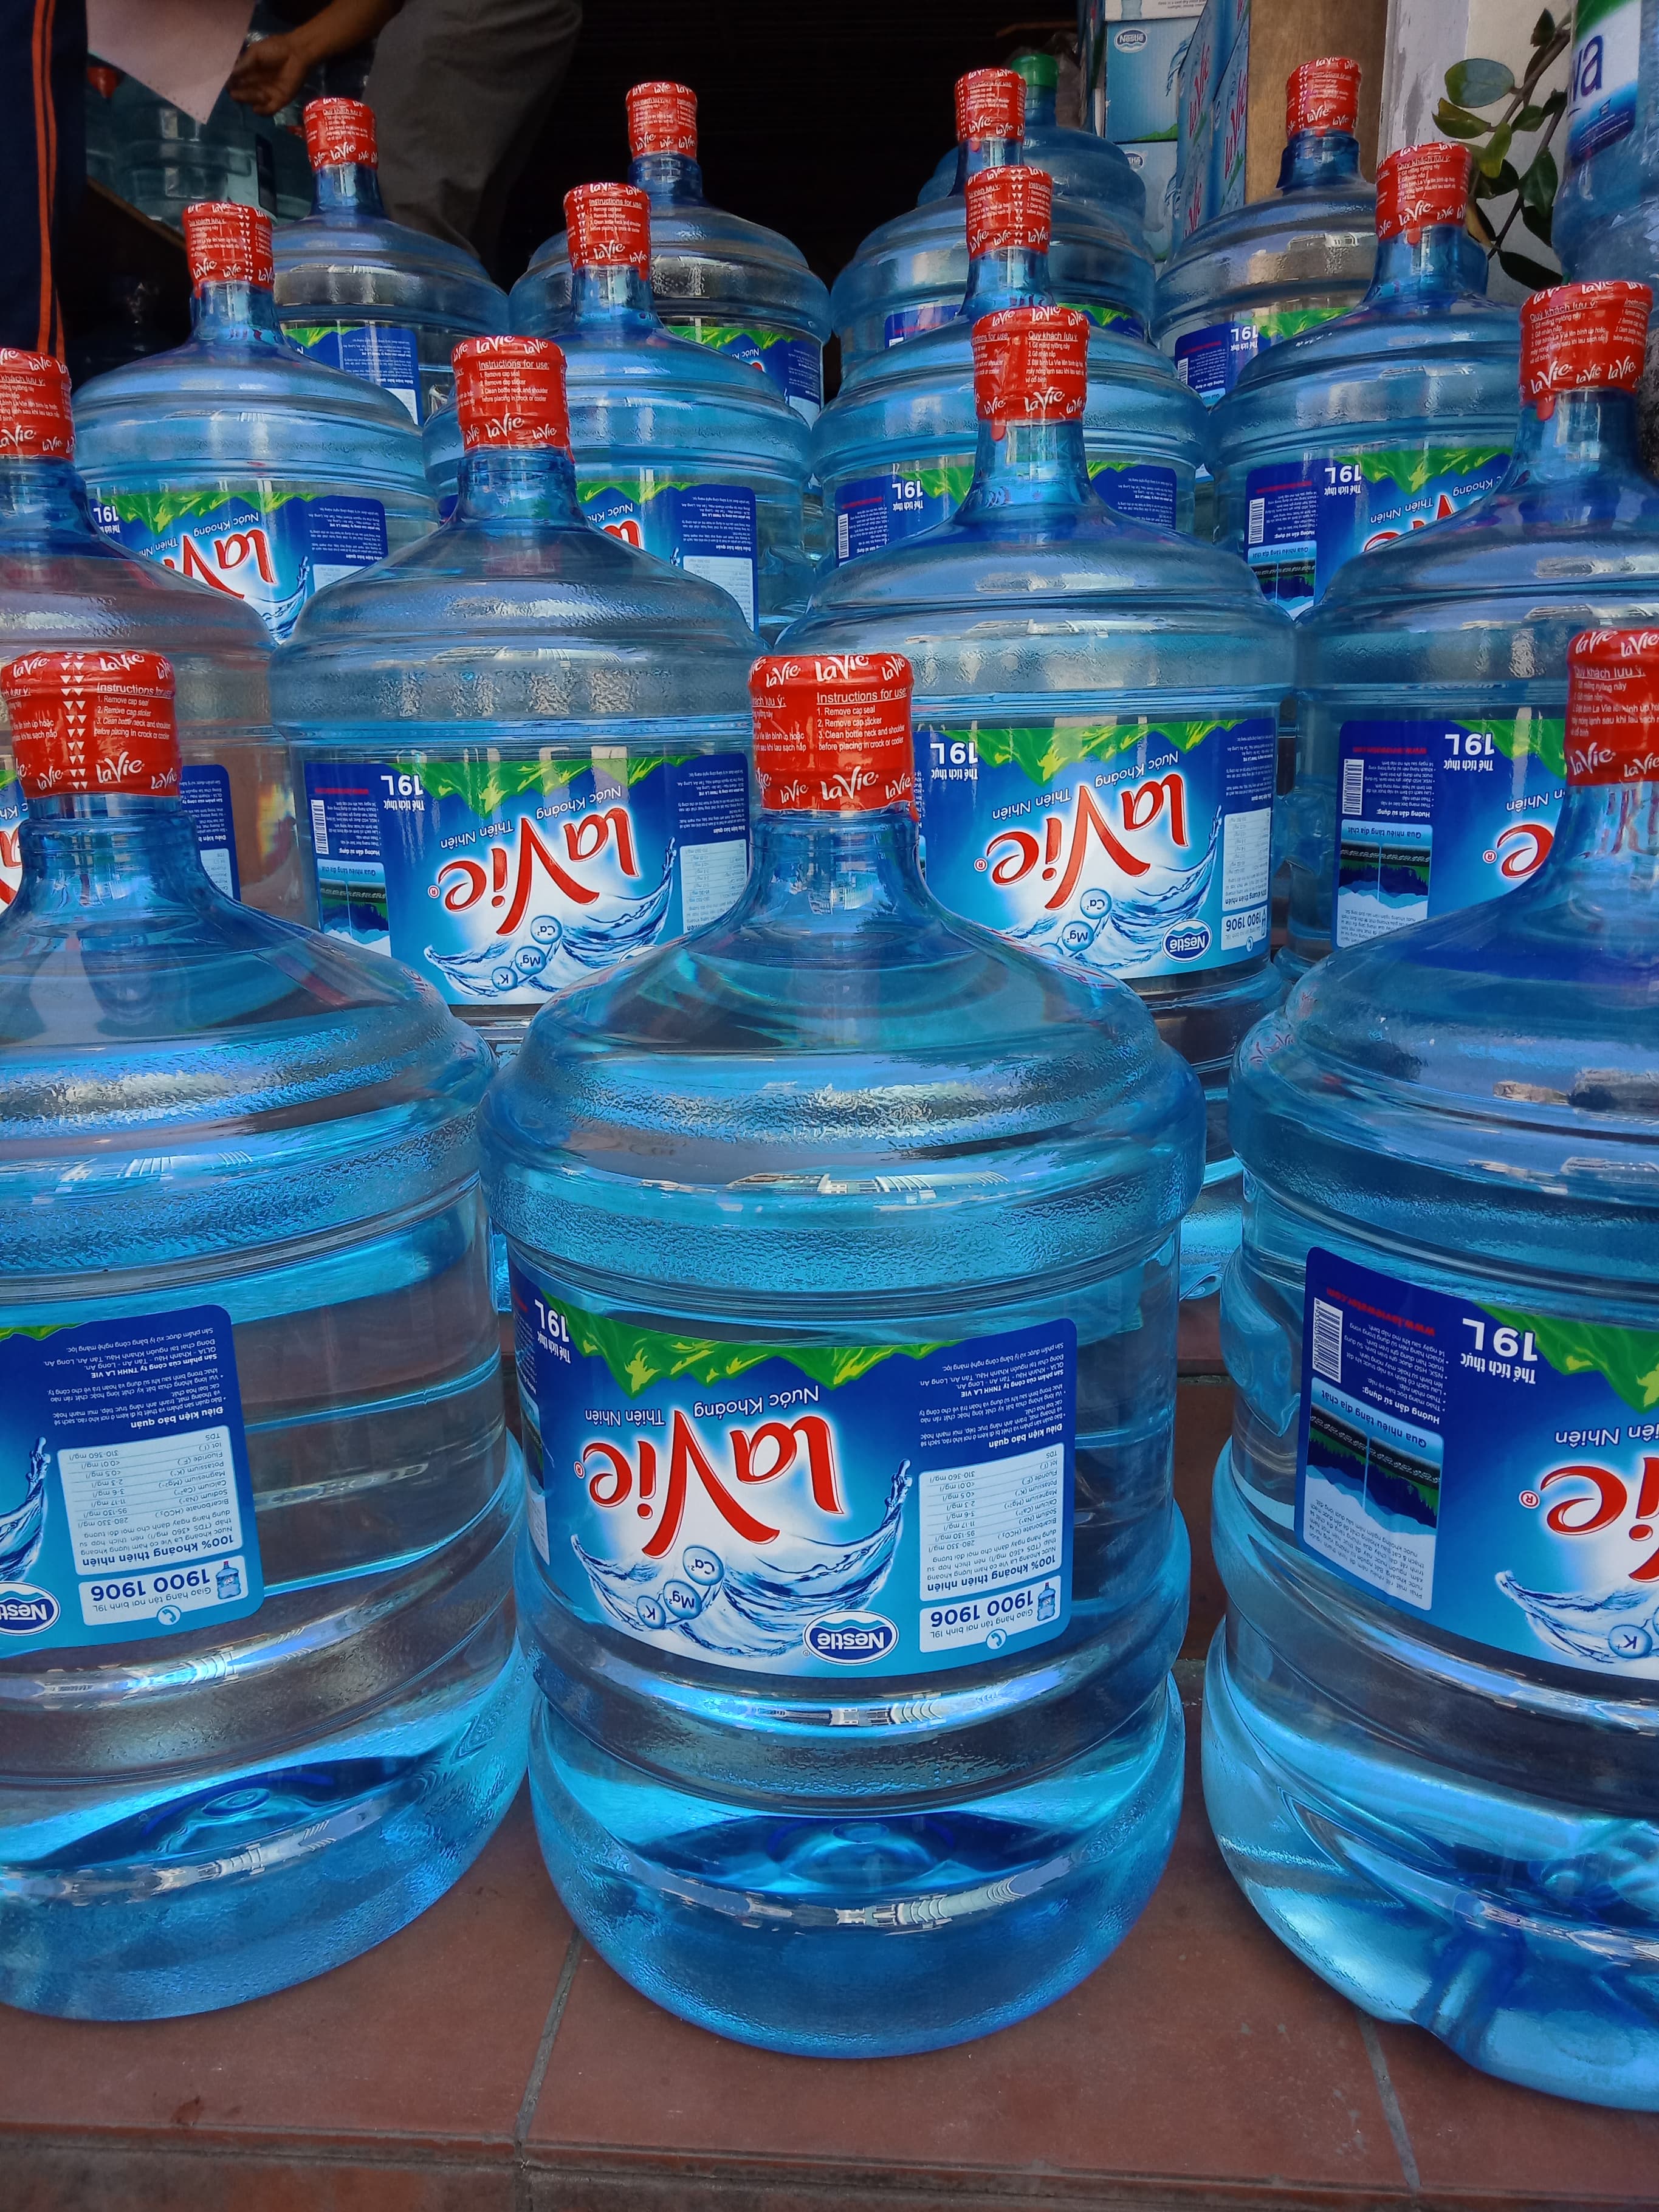 Đại lý nước uống Lavie quận 1 cung cấp đầy đủ các thương hiệu khác nhau